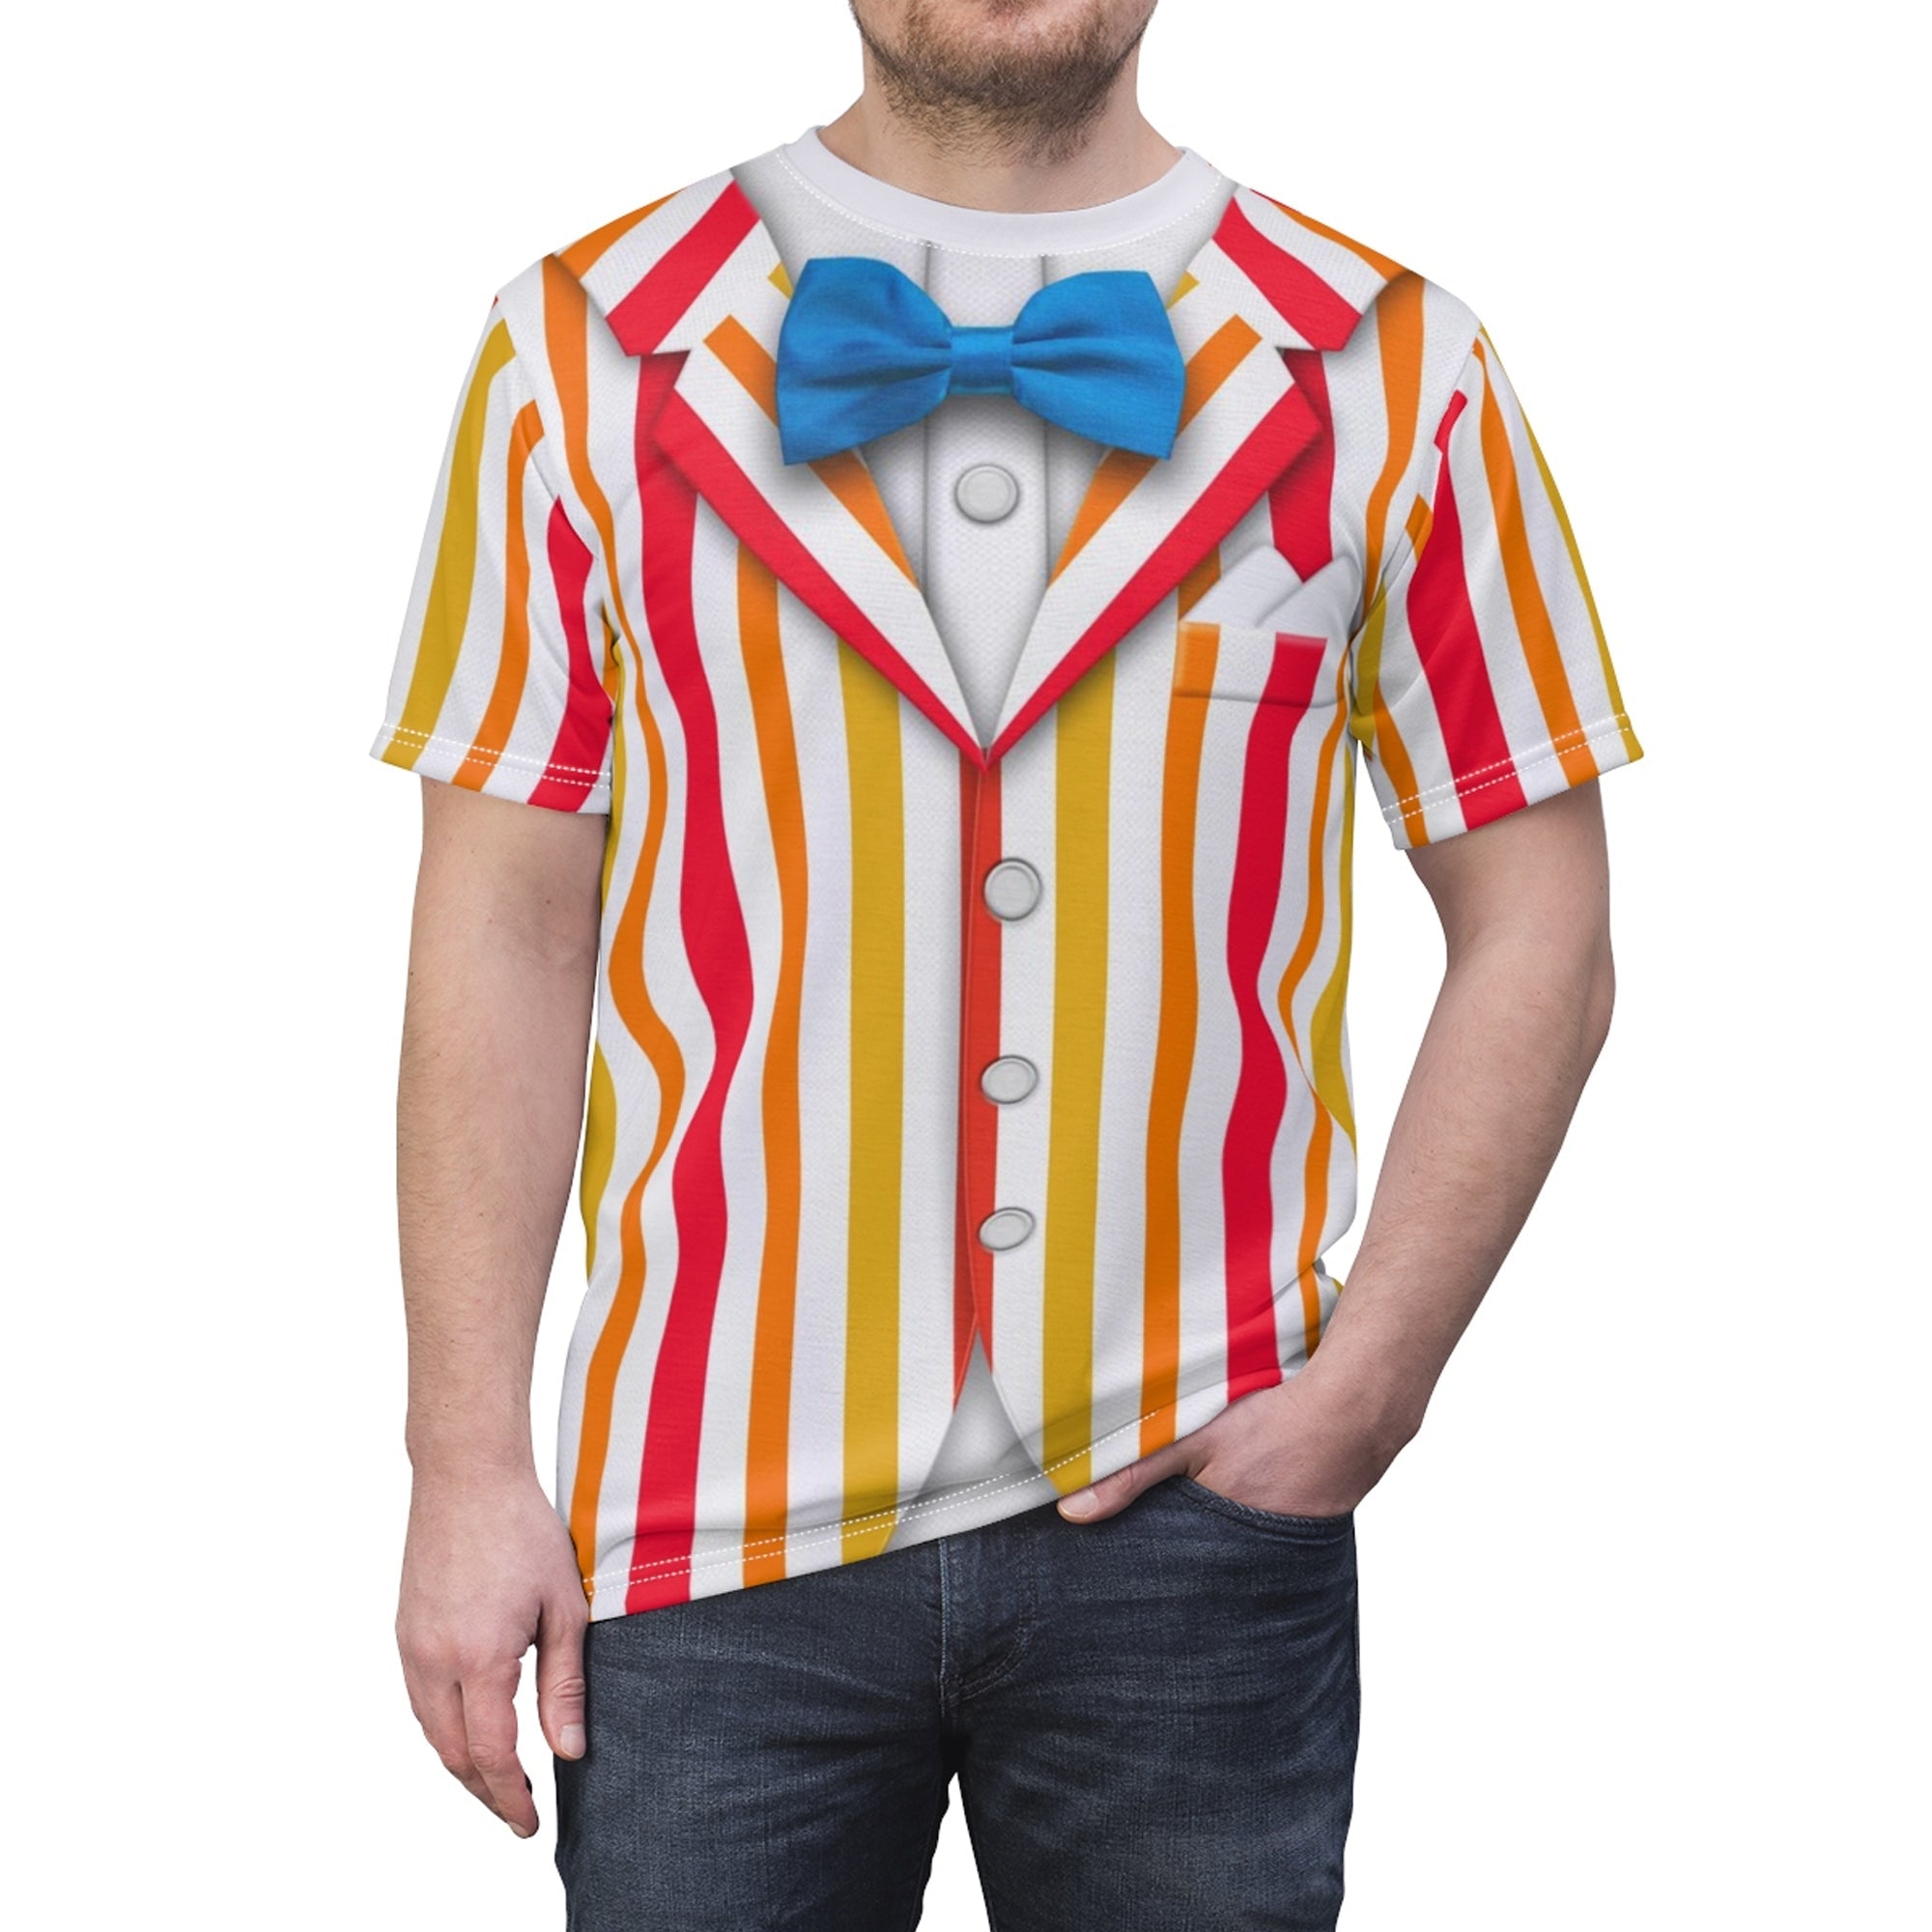 Bert Mary Poppins Costume T-Shirt